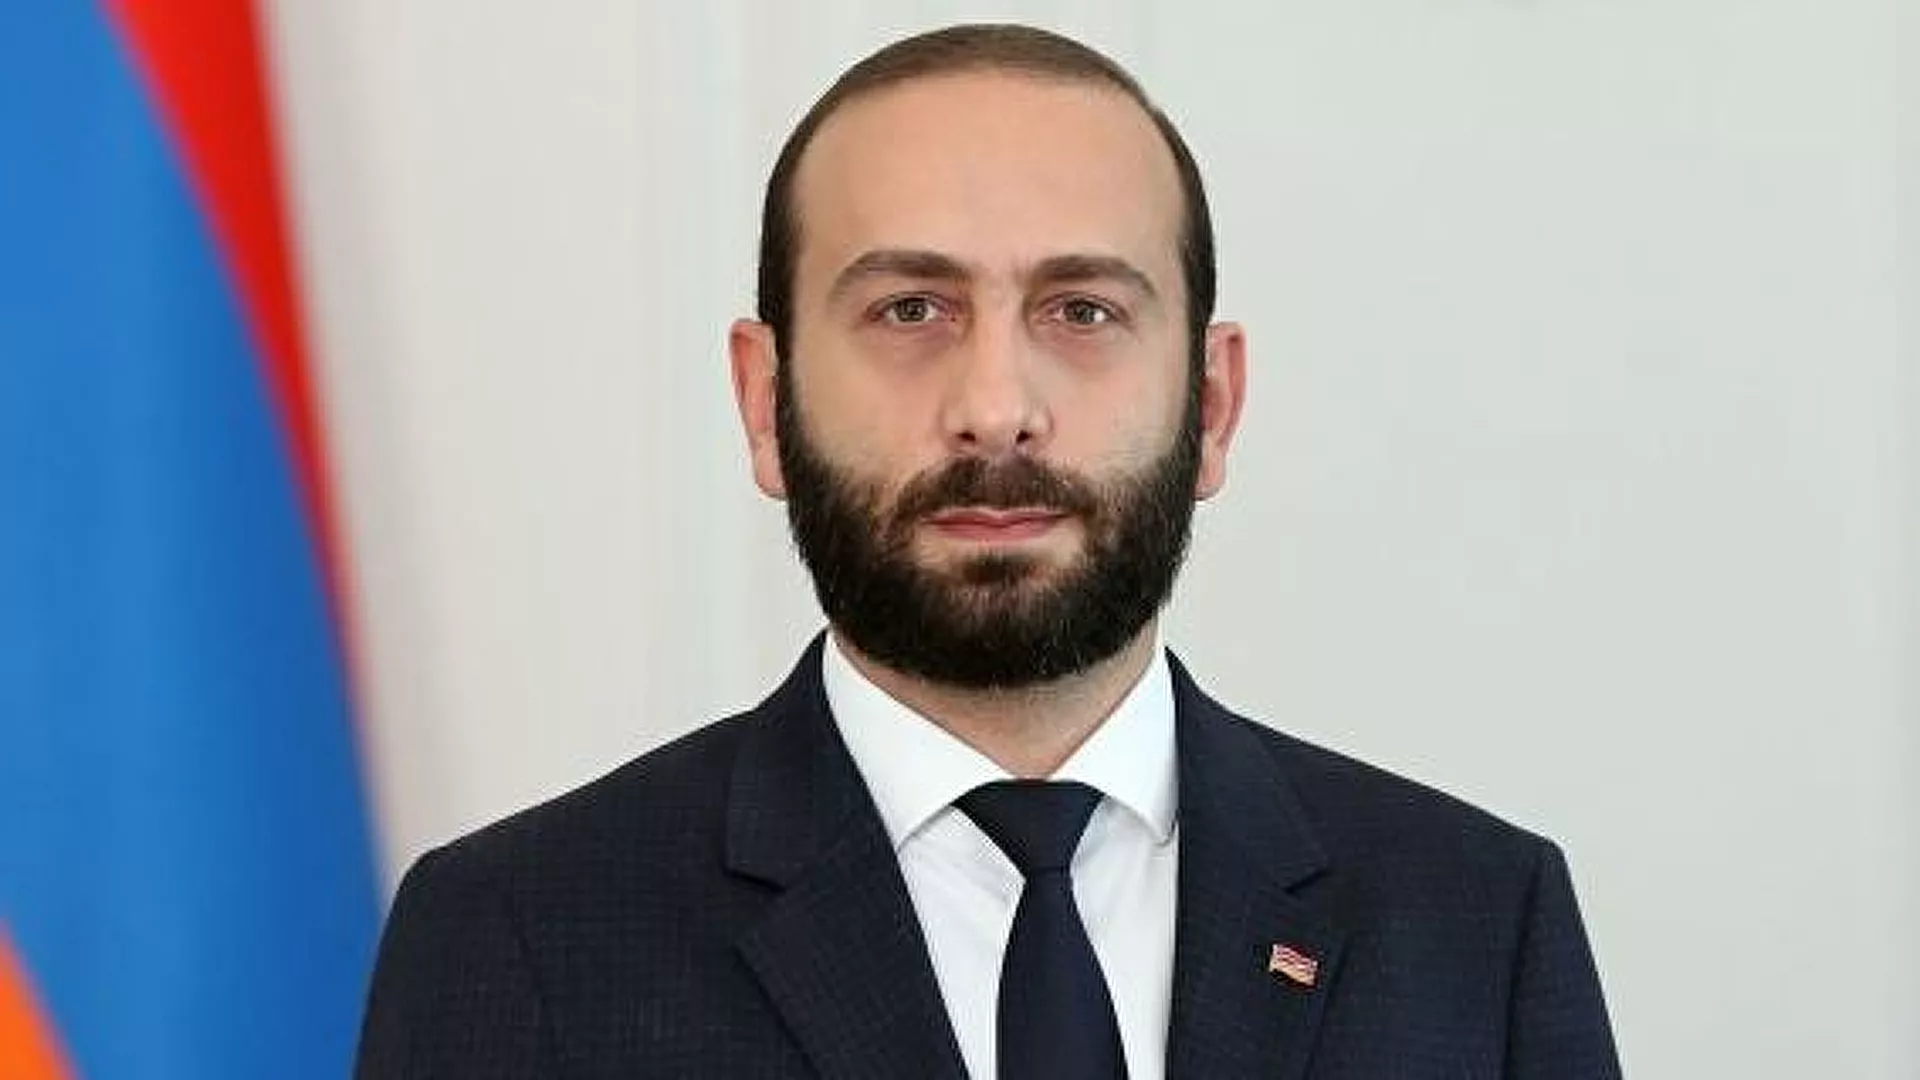 Ermenistan’dan açıklama geldi: Antalya’daki foruma katılacaklar mı?